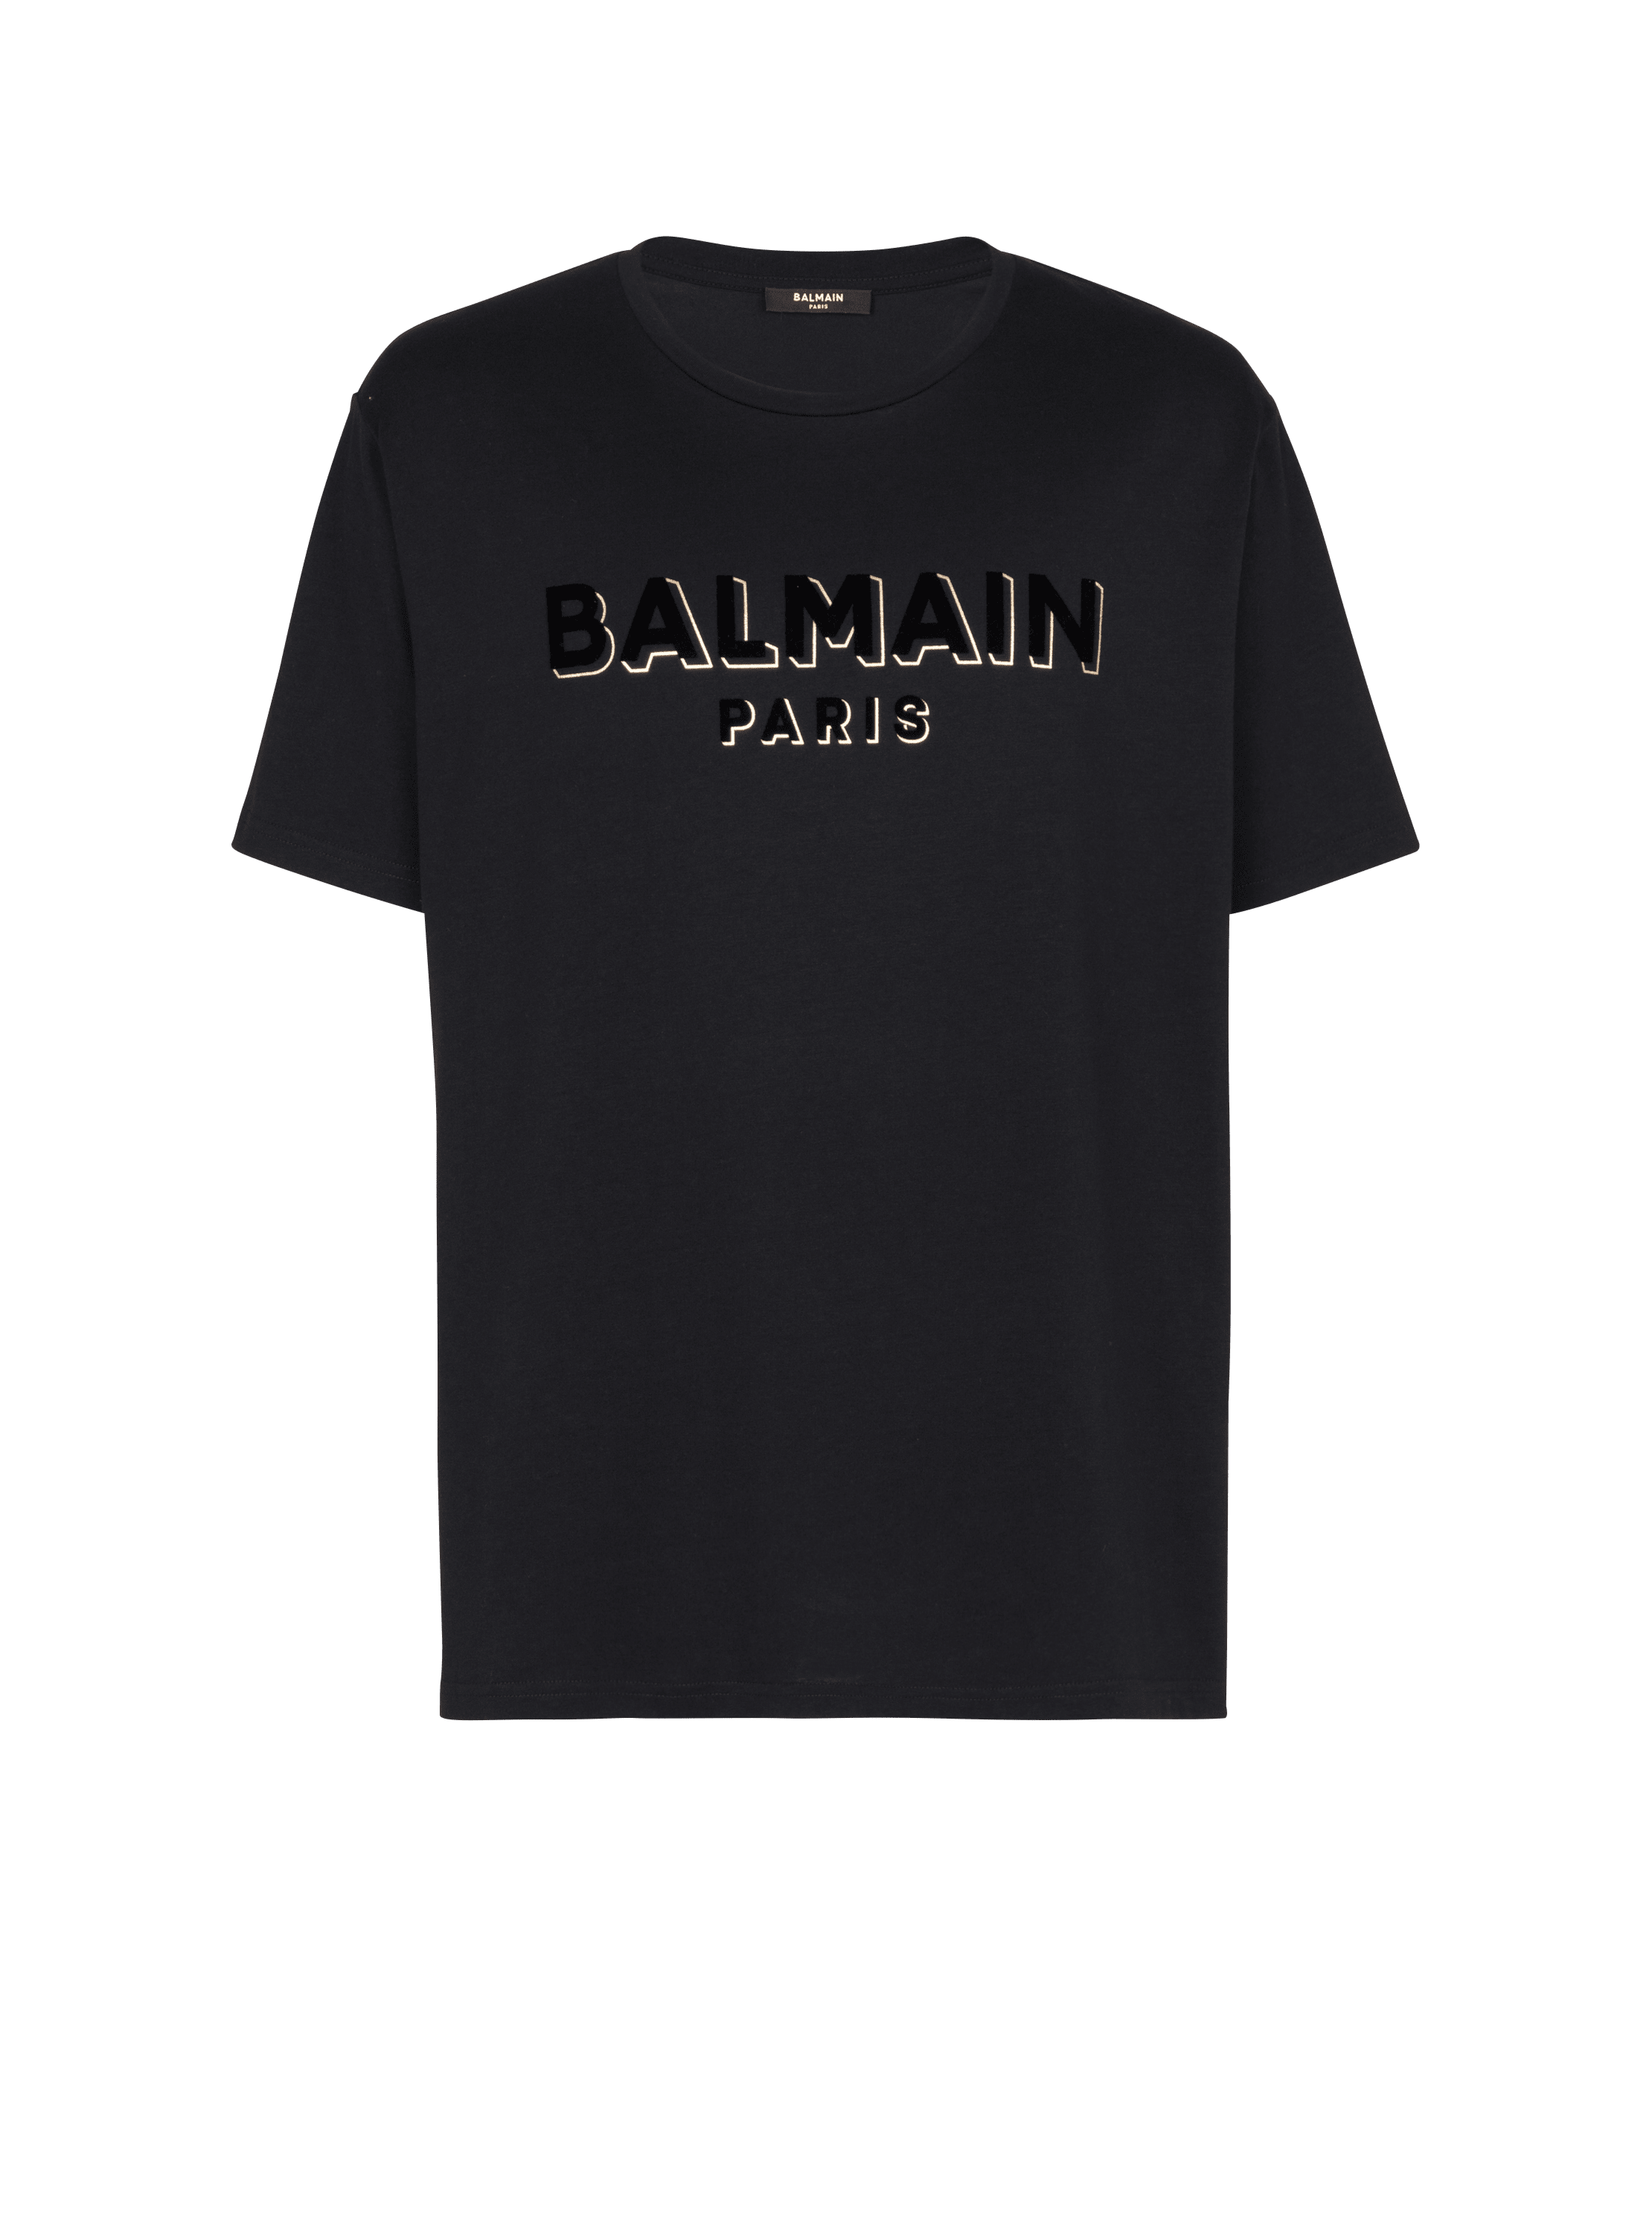 T-shirt oversize en coton à logo Balmain texturé, noir, hi-res